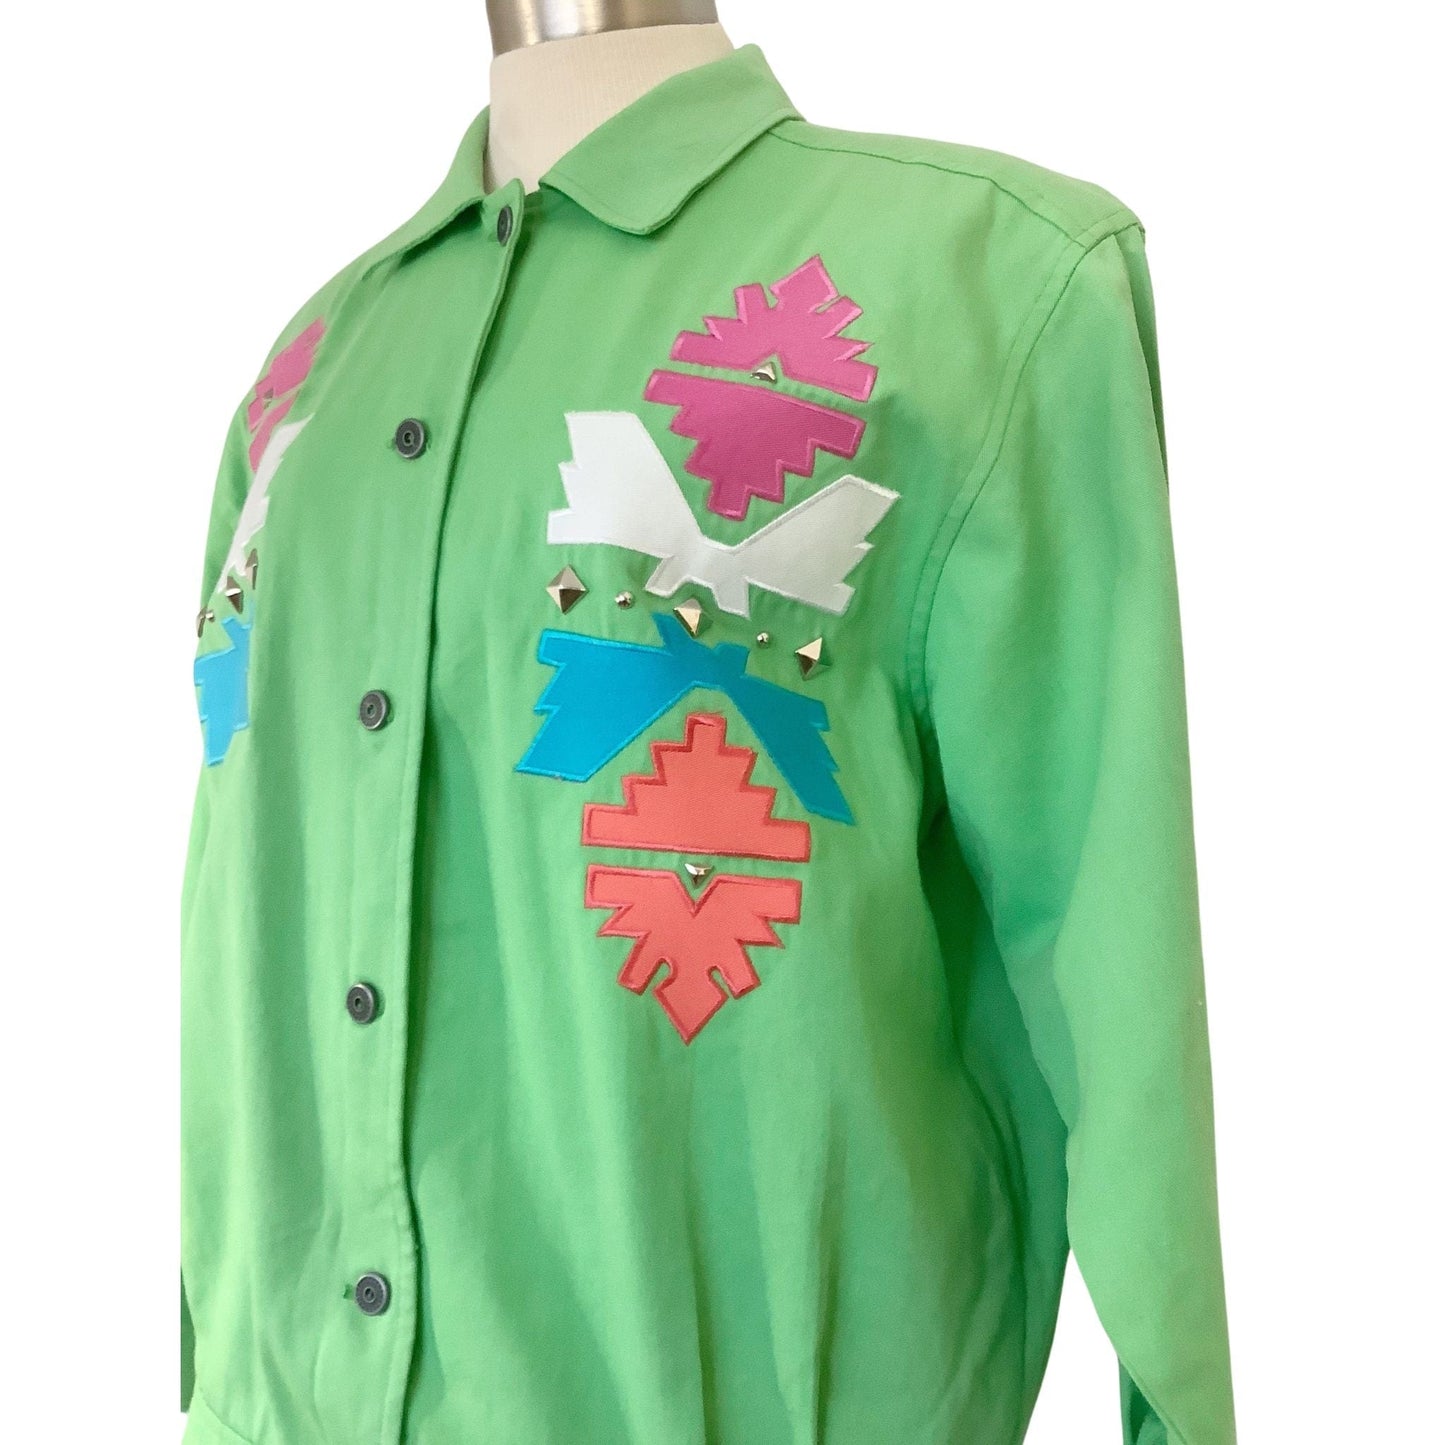 Rockabilly Green Jacket Medium / Green / Vintage 1980s